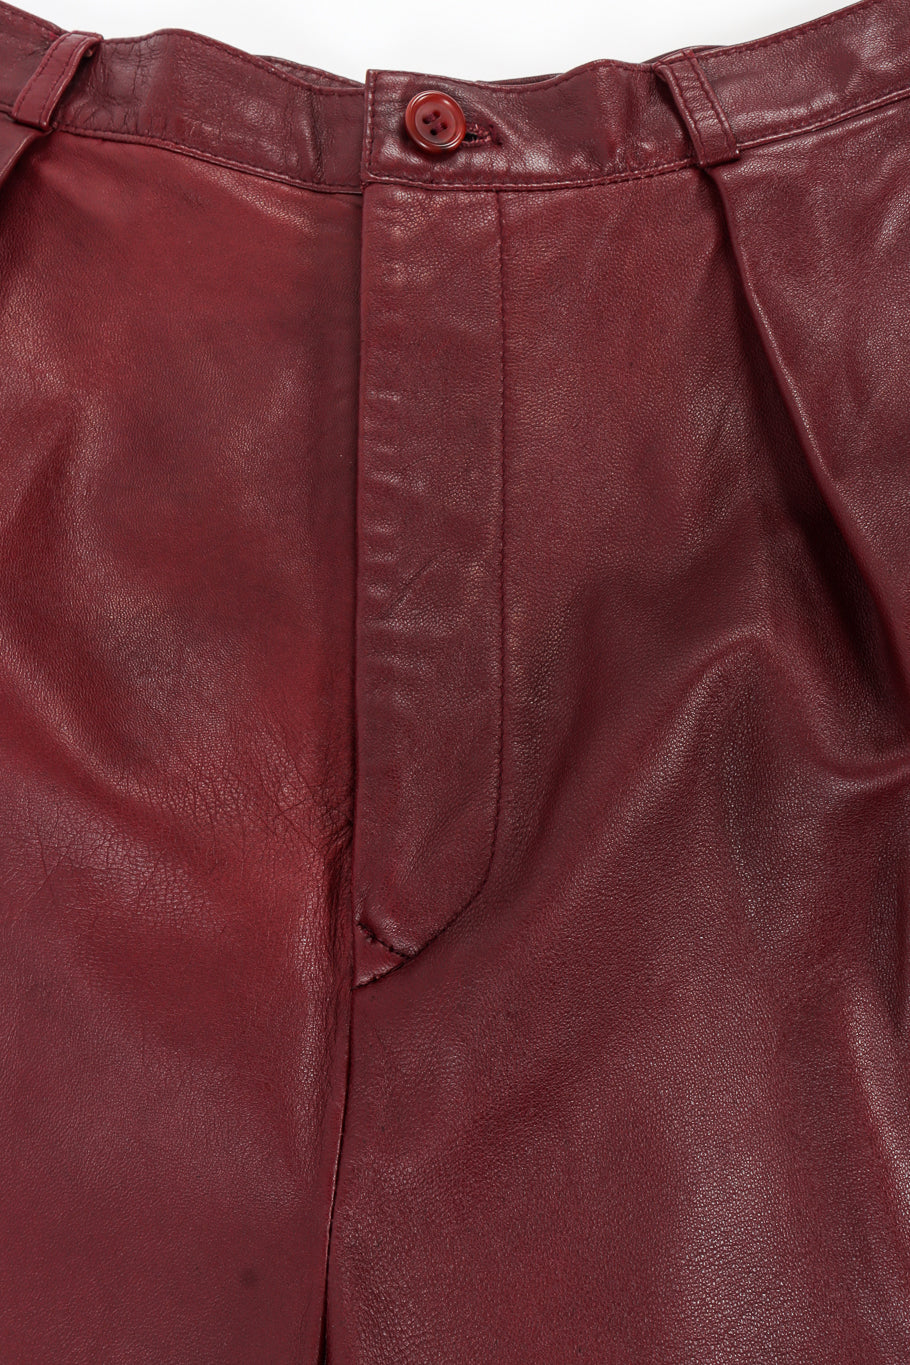 Vintage Calvin Klein Leather Shirt & Pant Set front zip fly @ Recess LA